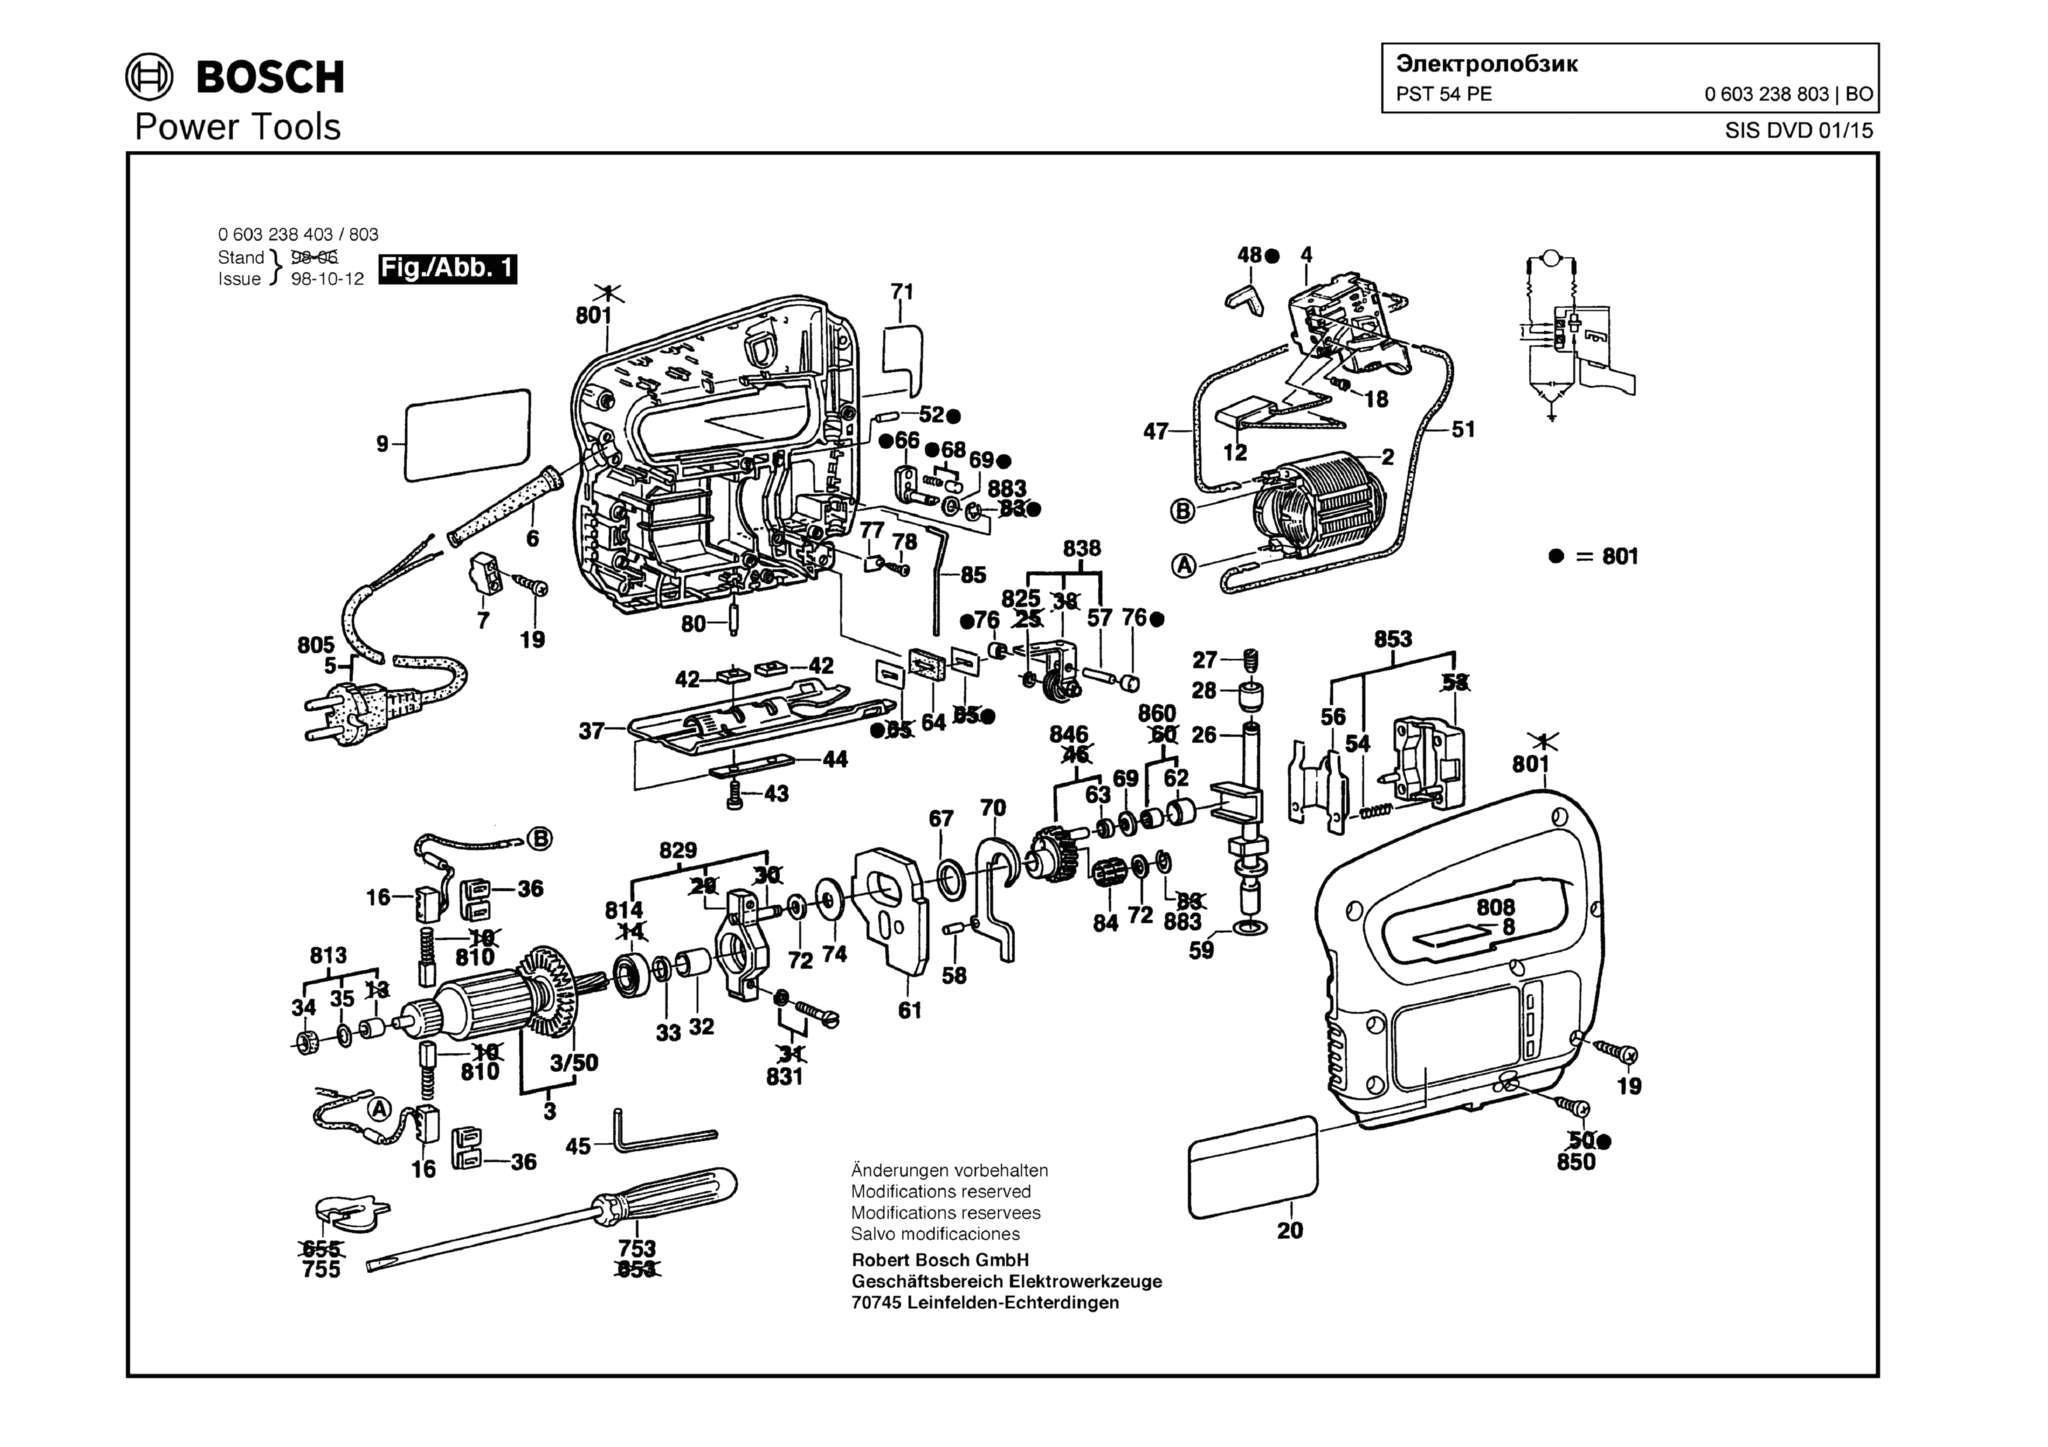 Запчасти, схема и деталировка Bosch PST 54 PE (ТИП 603238803)